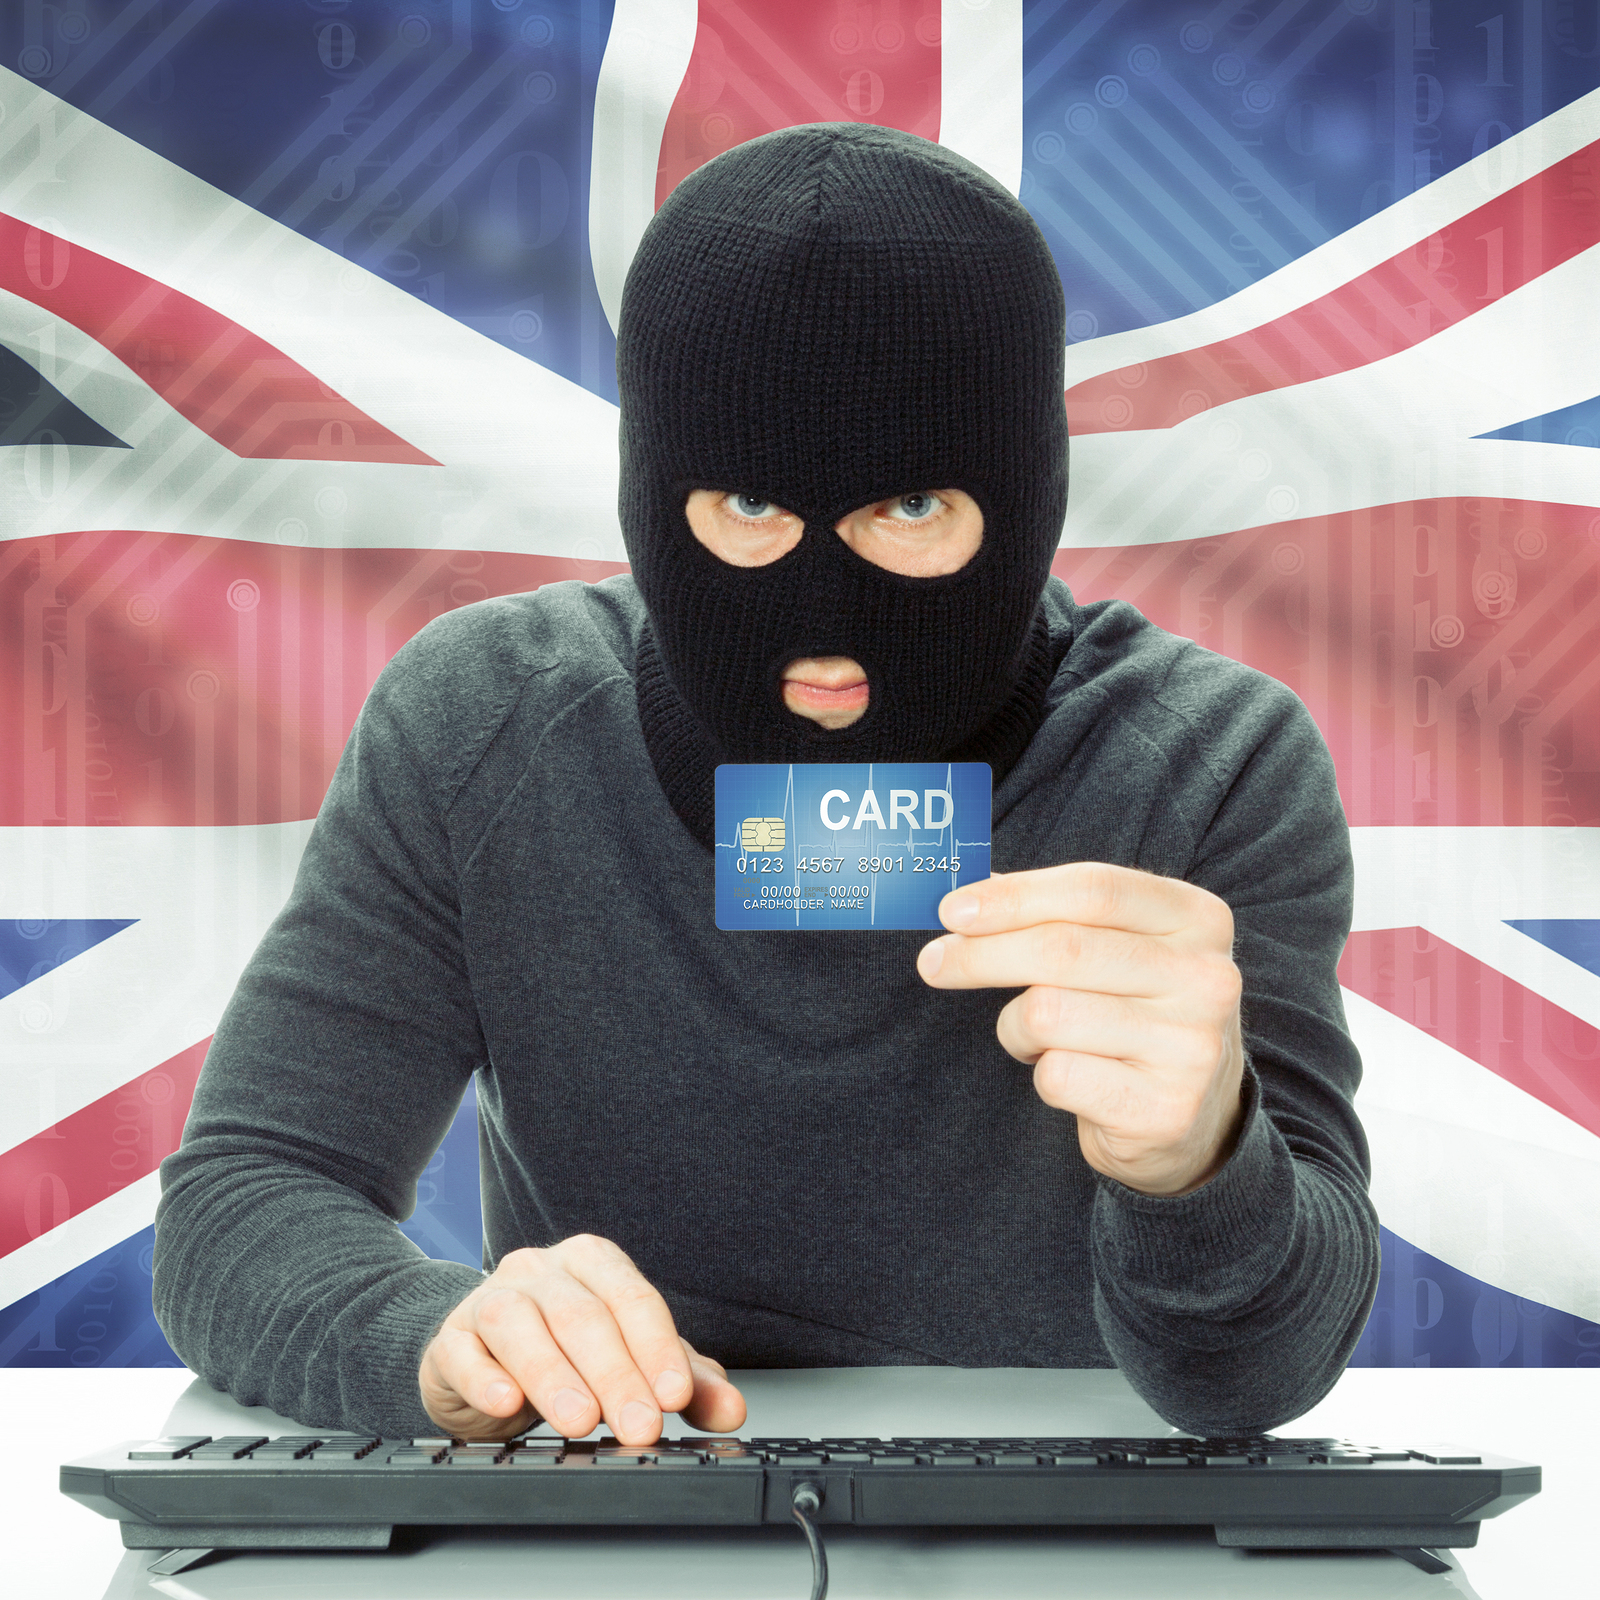 Cyber crime predominates in the UK